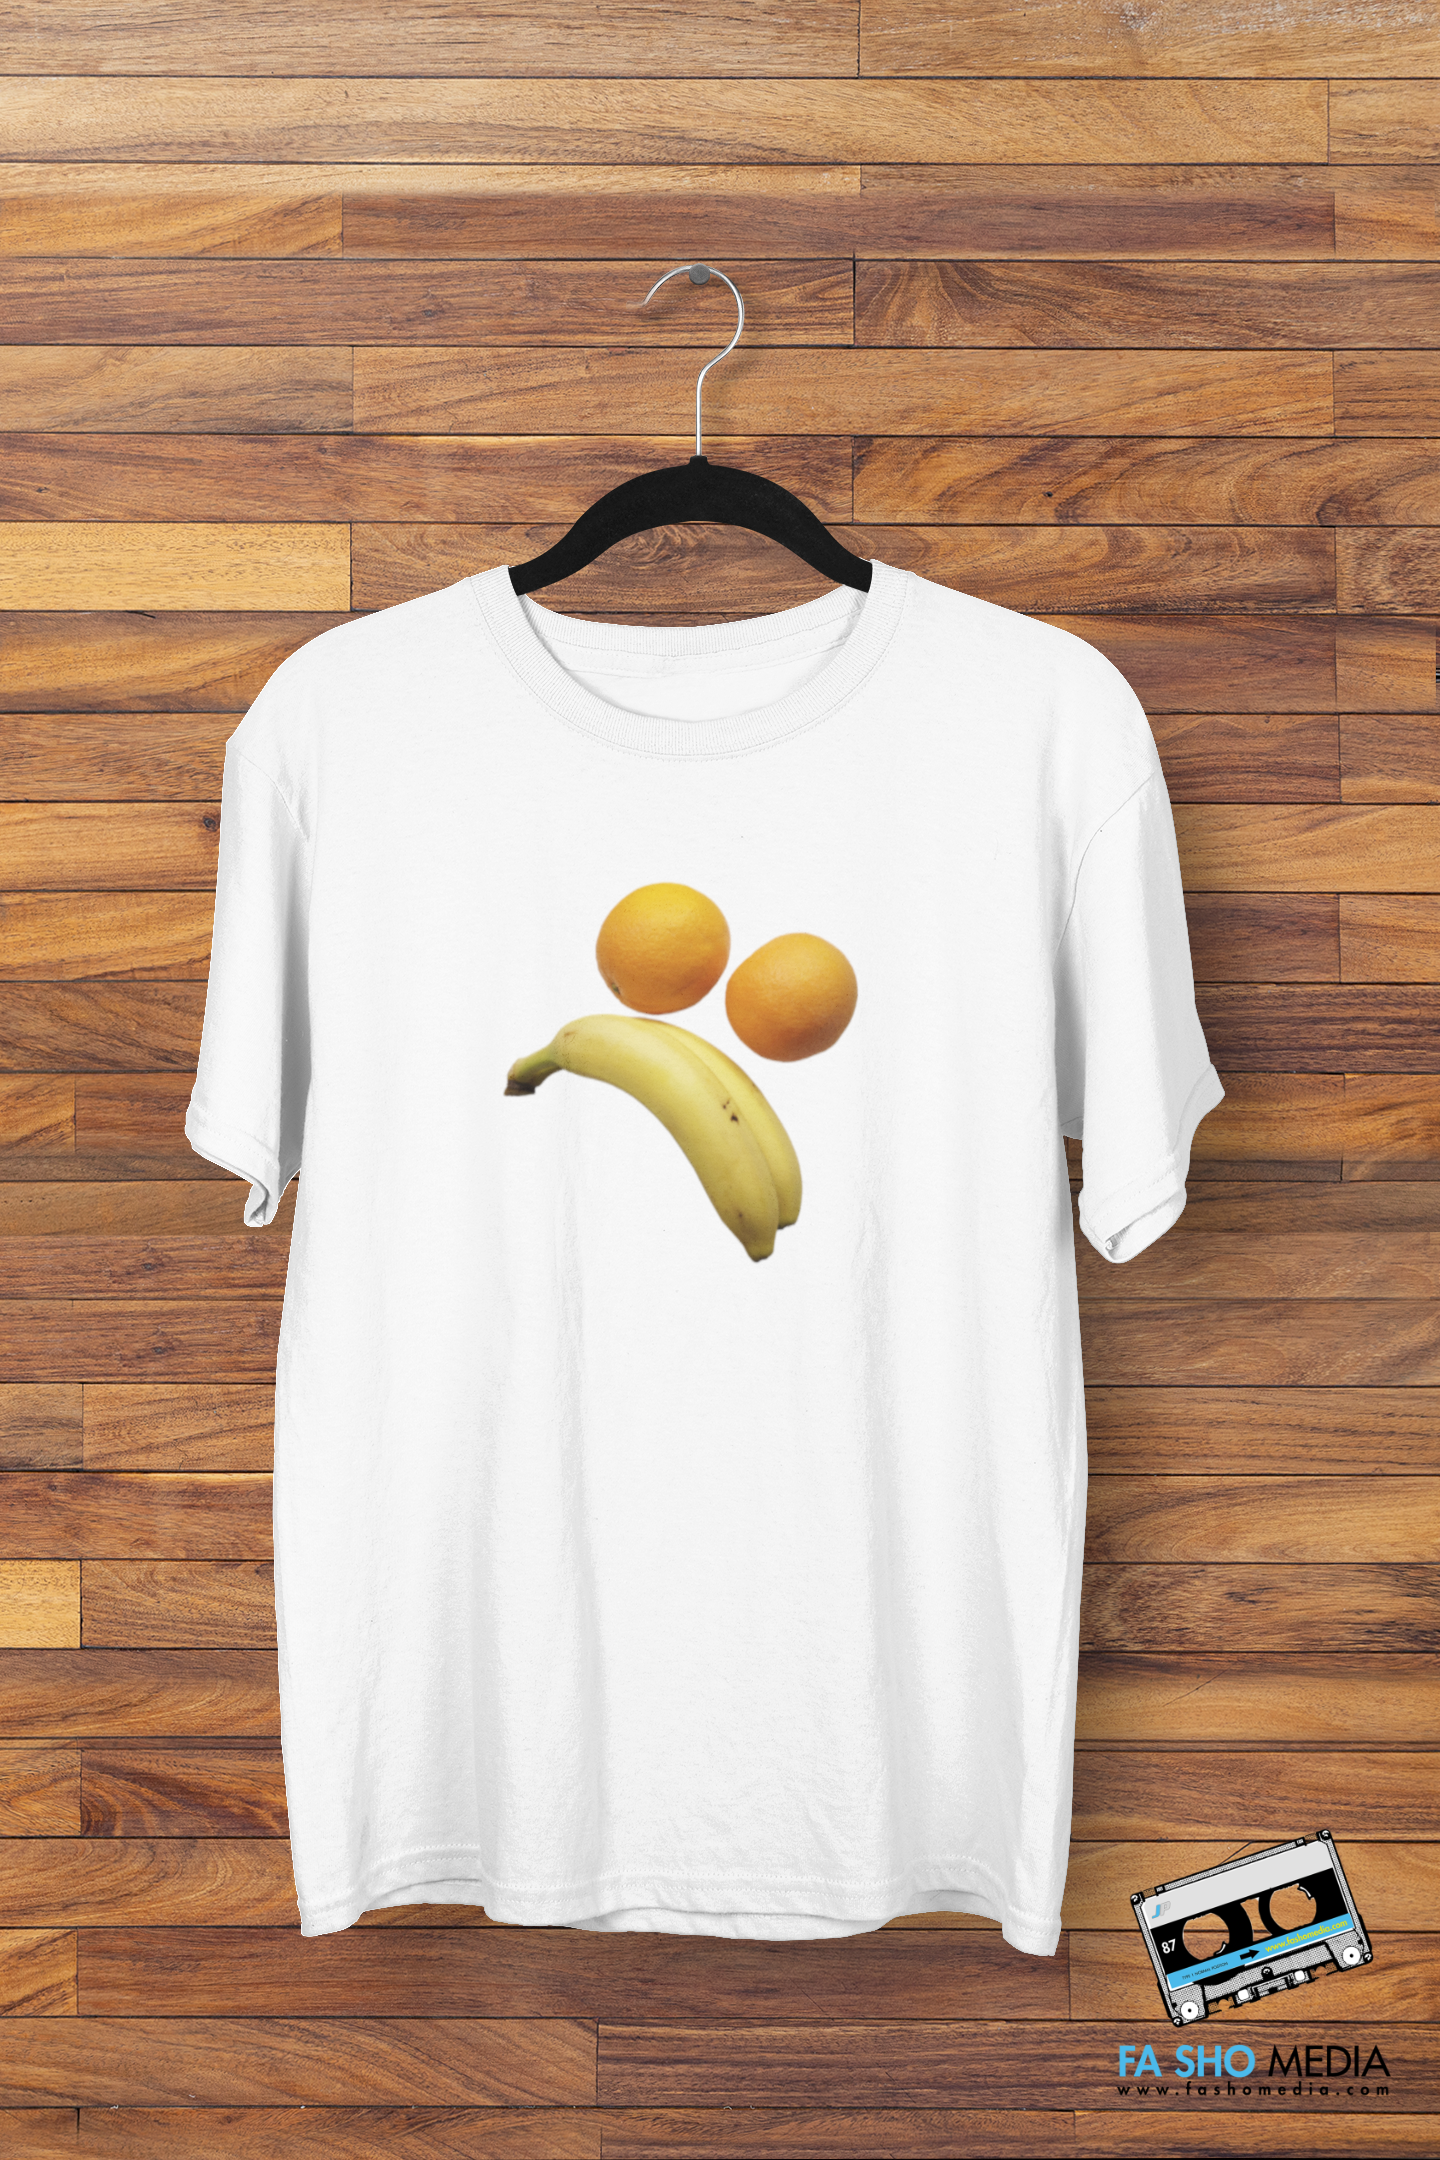 Sad Fruit Face Shirt